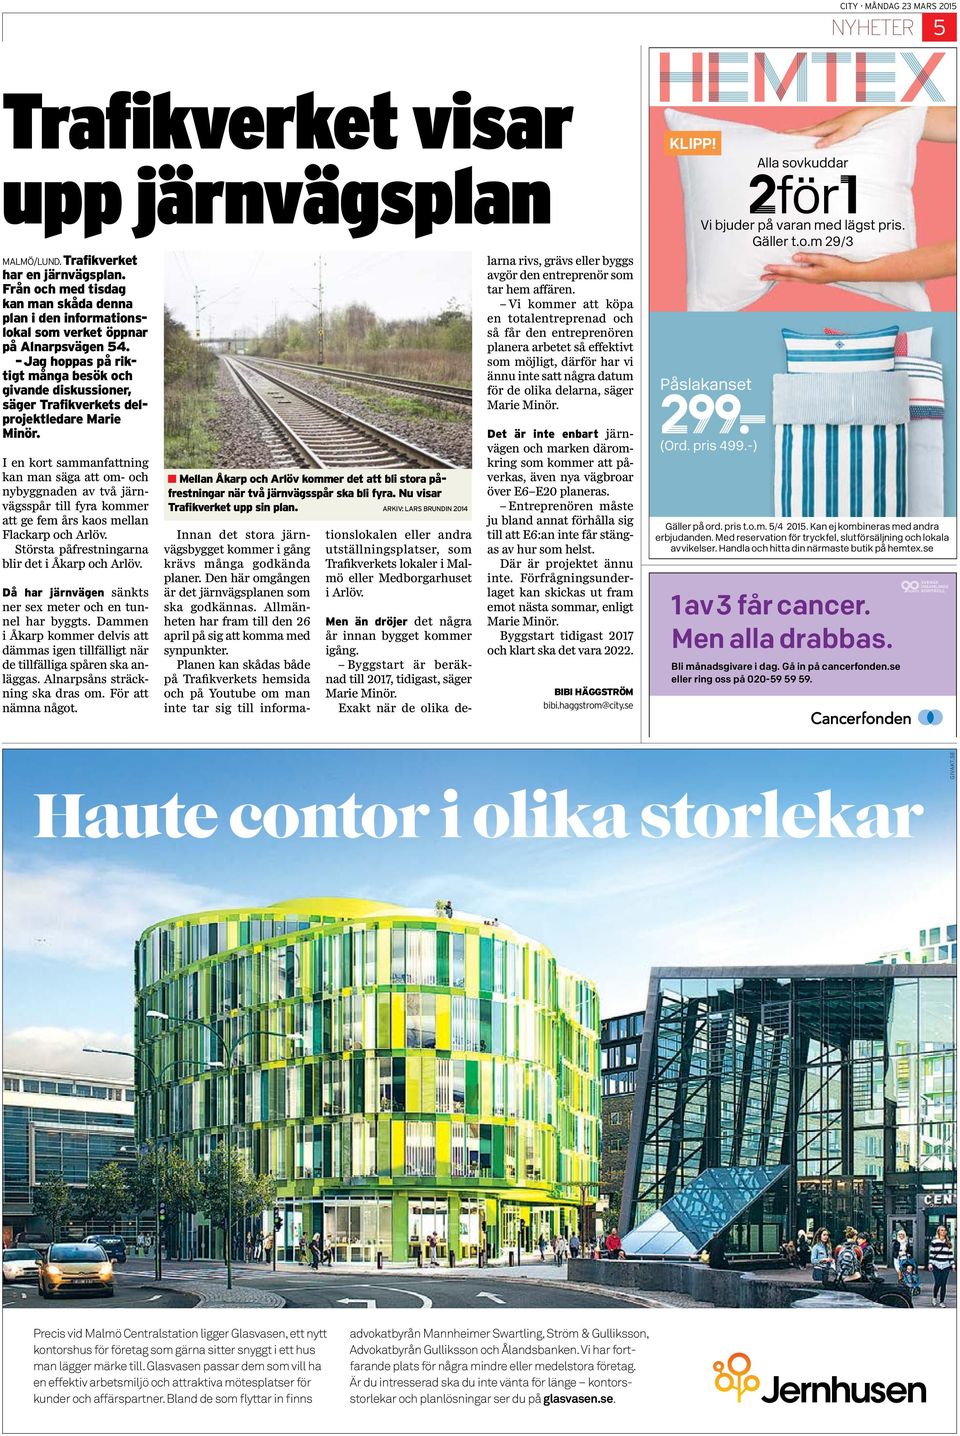 I en kort sammanfattning kan man säga att om- och nybyggnaden av två järnvägsspår till fyra kommer att ge fem års kaos mellan Flackarp och Arlöv. Största påfrestningarna blir det i Åkarp och Arlöv.